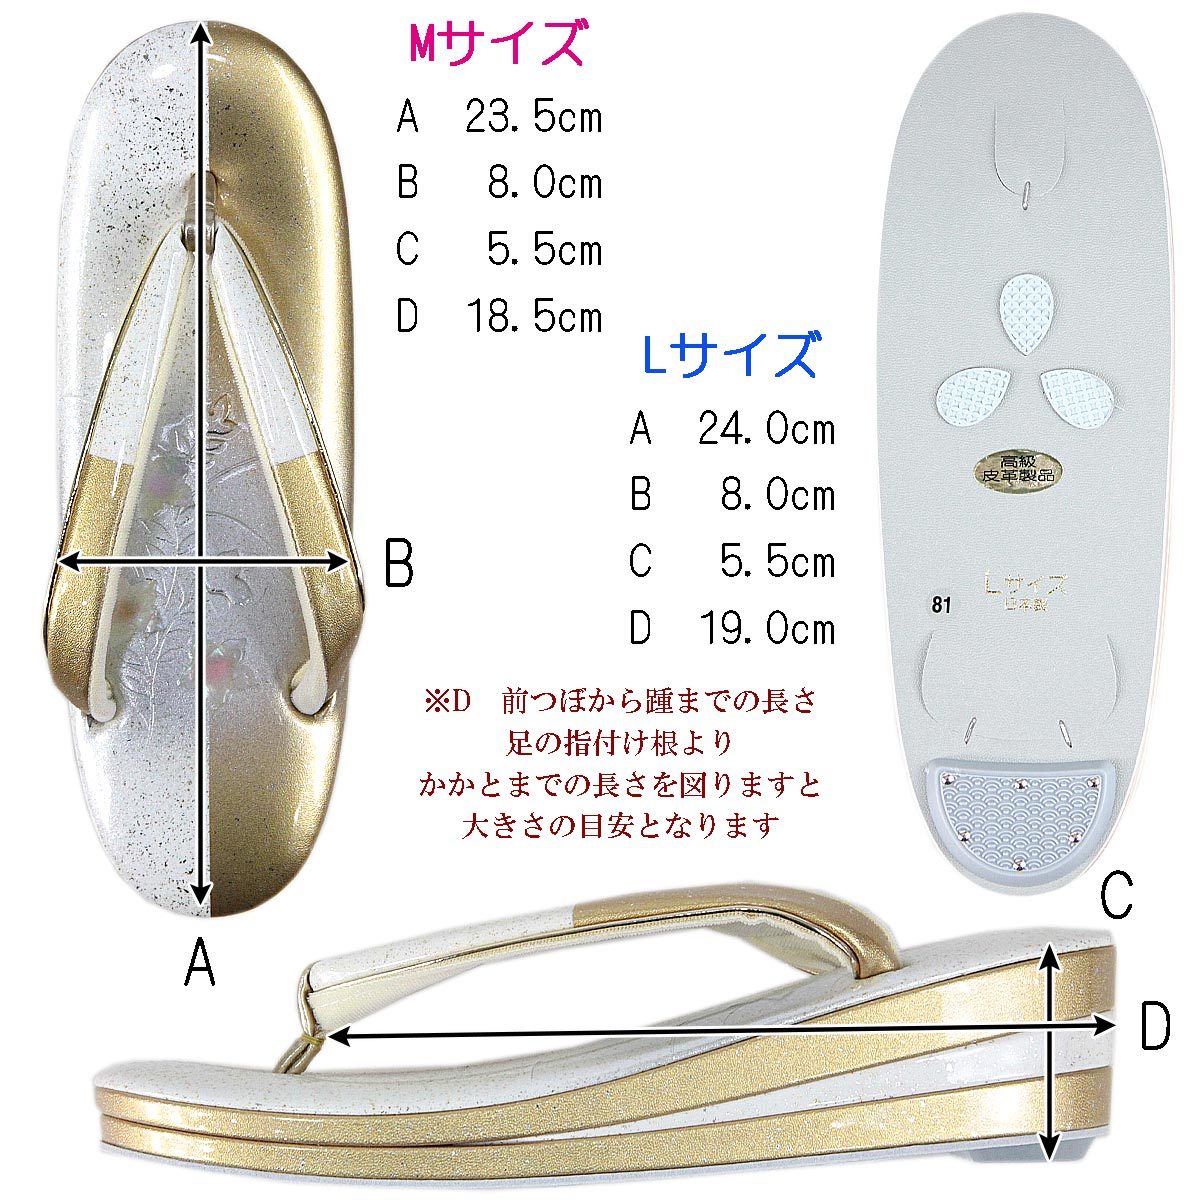 本革草履 -81- レディース 螺鈿細工 24.0cm/L-size ホワイト/ゴールド